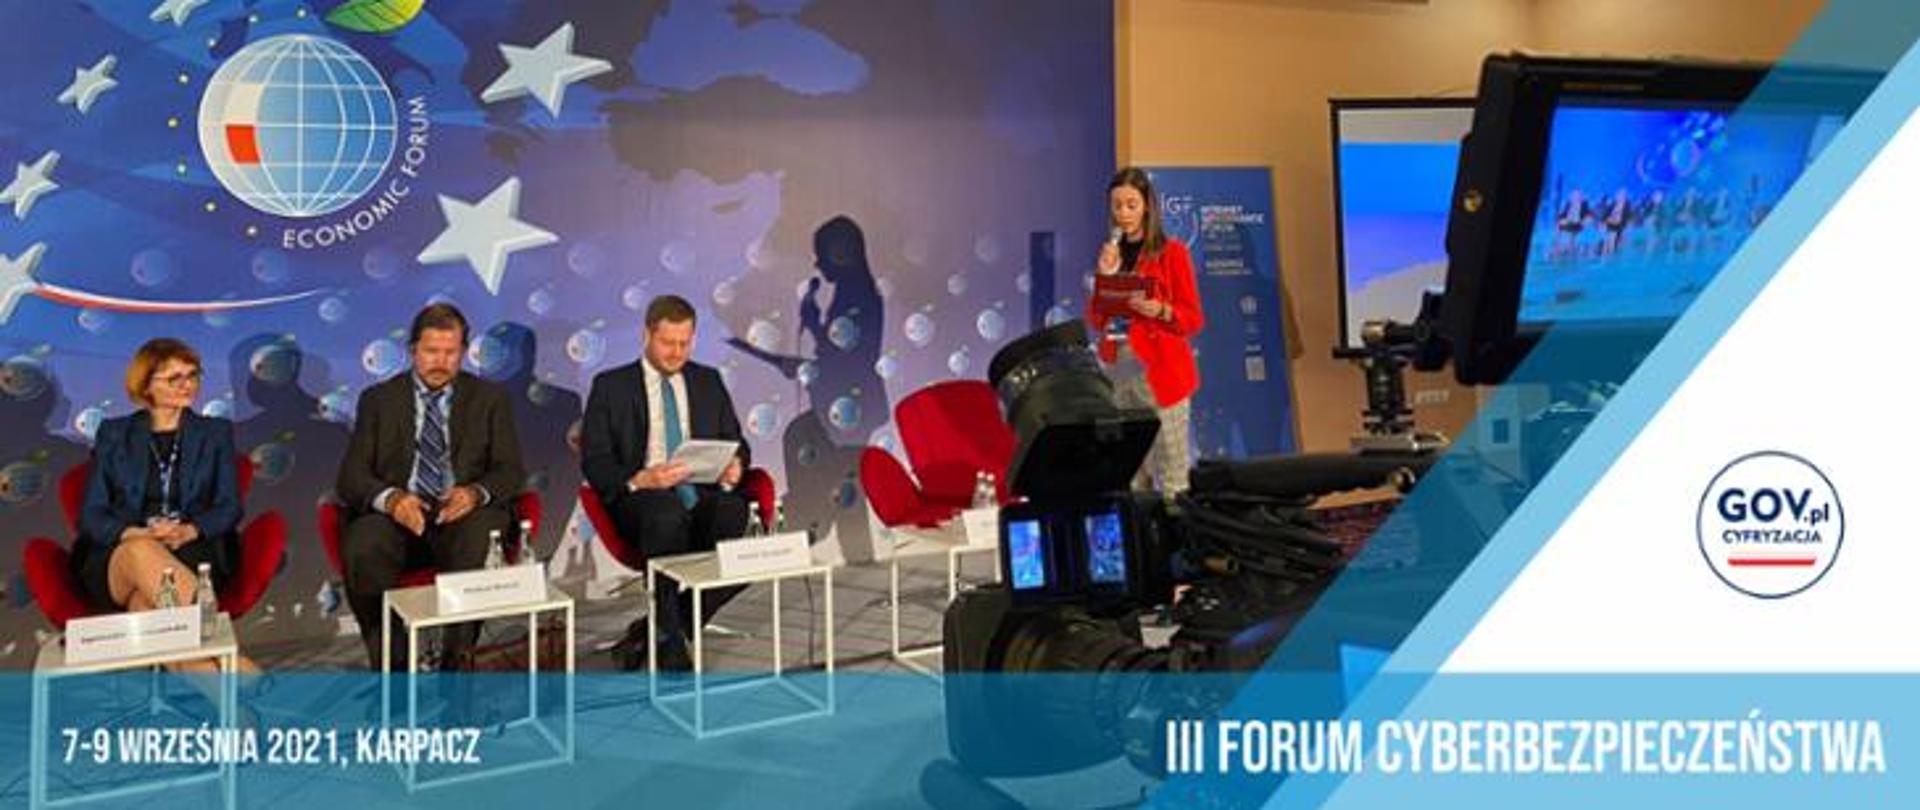 Baner Forum Cyberbezpieczeństwa w Karpaczu - na zdjęciu minister cieszyński jako uczestnik debaty